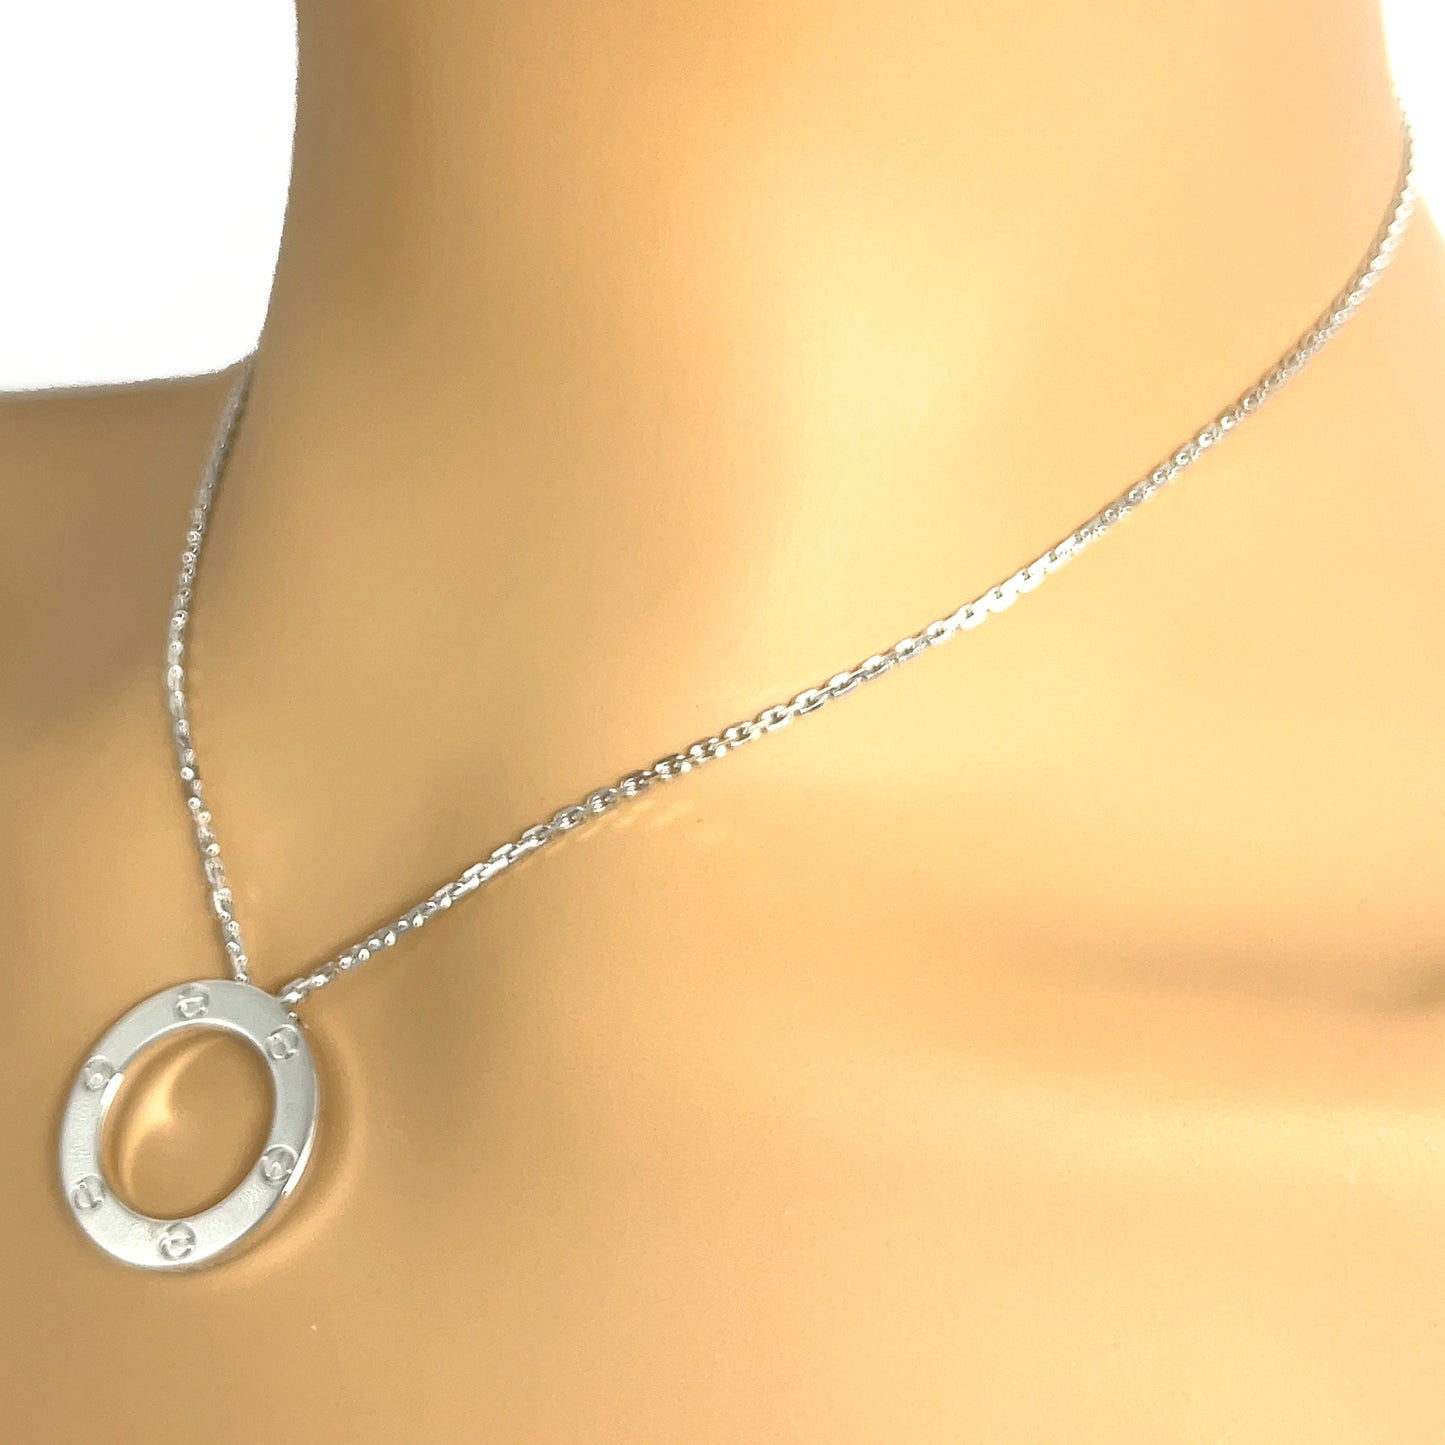 Cartier Love Necklace - Silver, 18K White Gold Pendant Necklace, Necklaces  - CRT58266